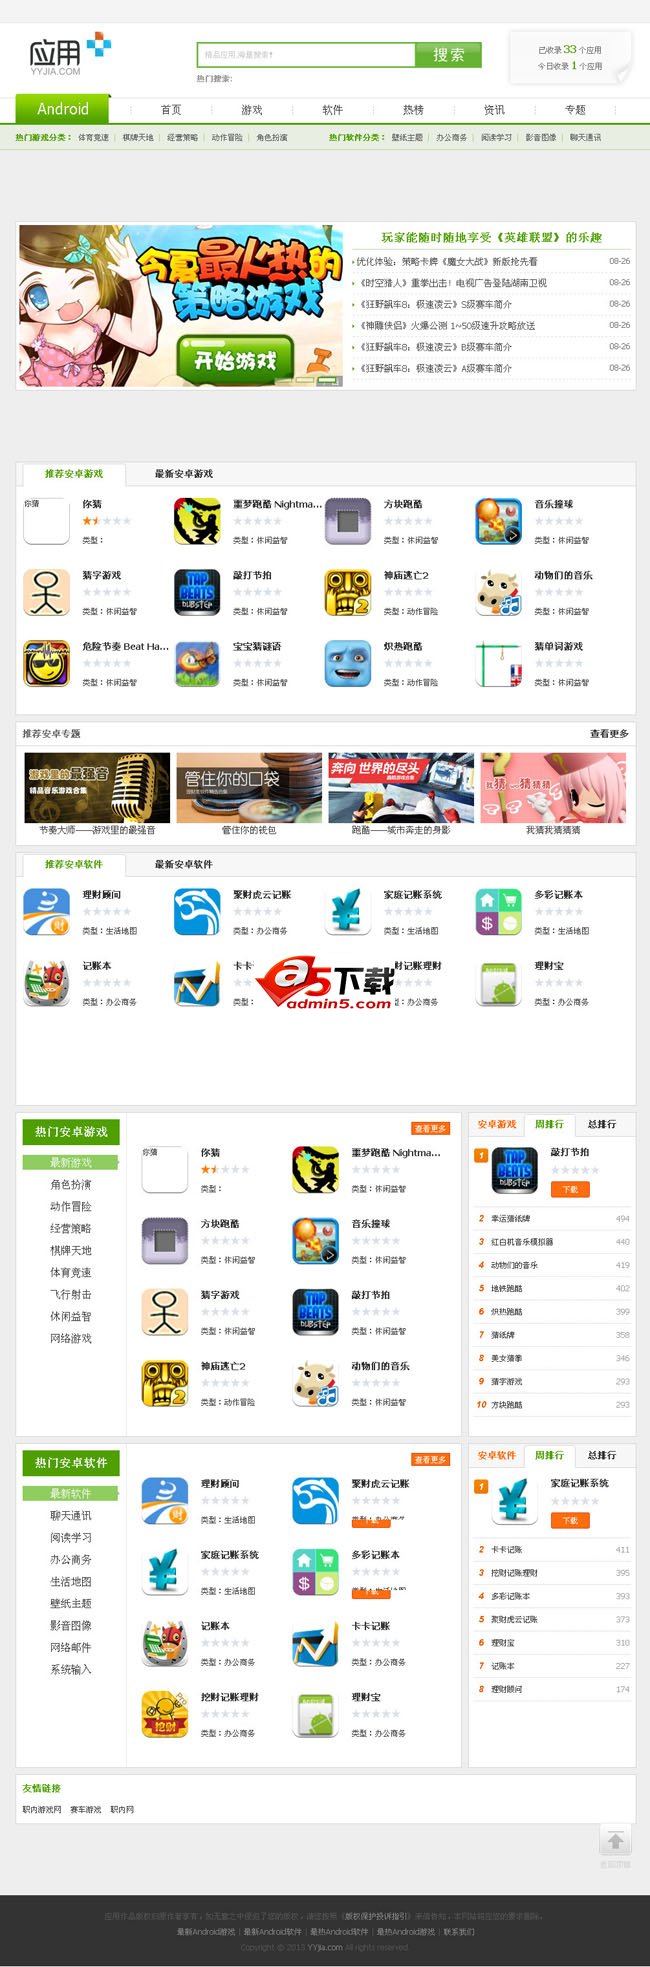 YYjia安卓应用市场网站系统